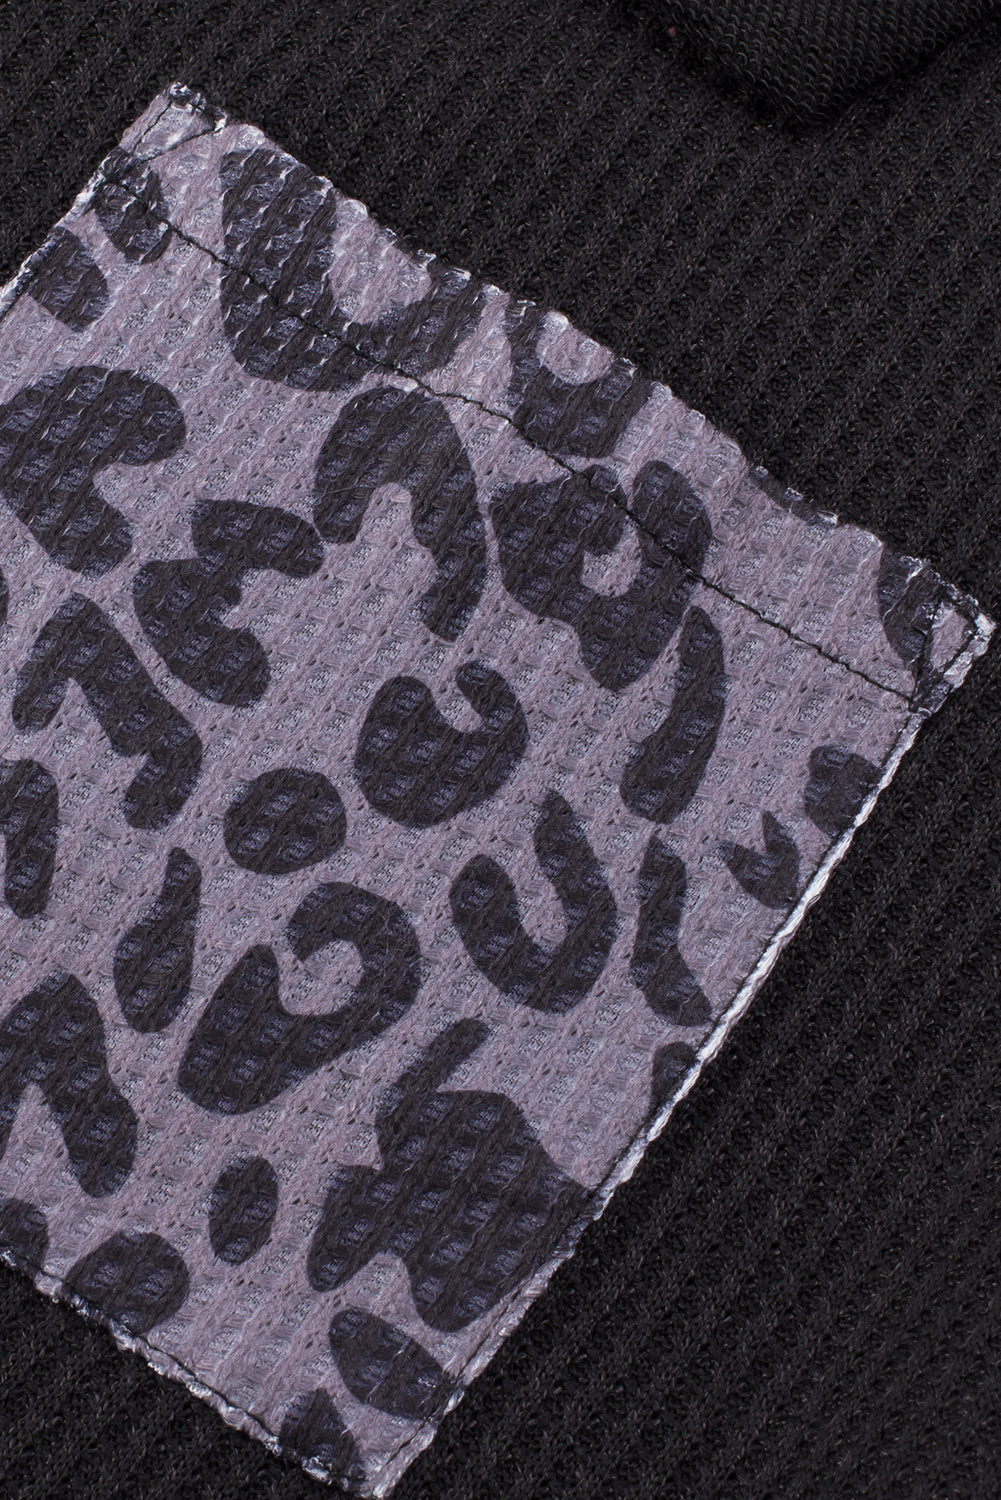 Khakifarbene, geknöpfte Bluse aus Waffelstrick-Patchwork mit Leopardenmuster